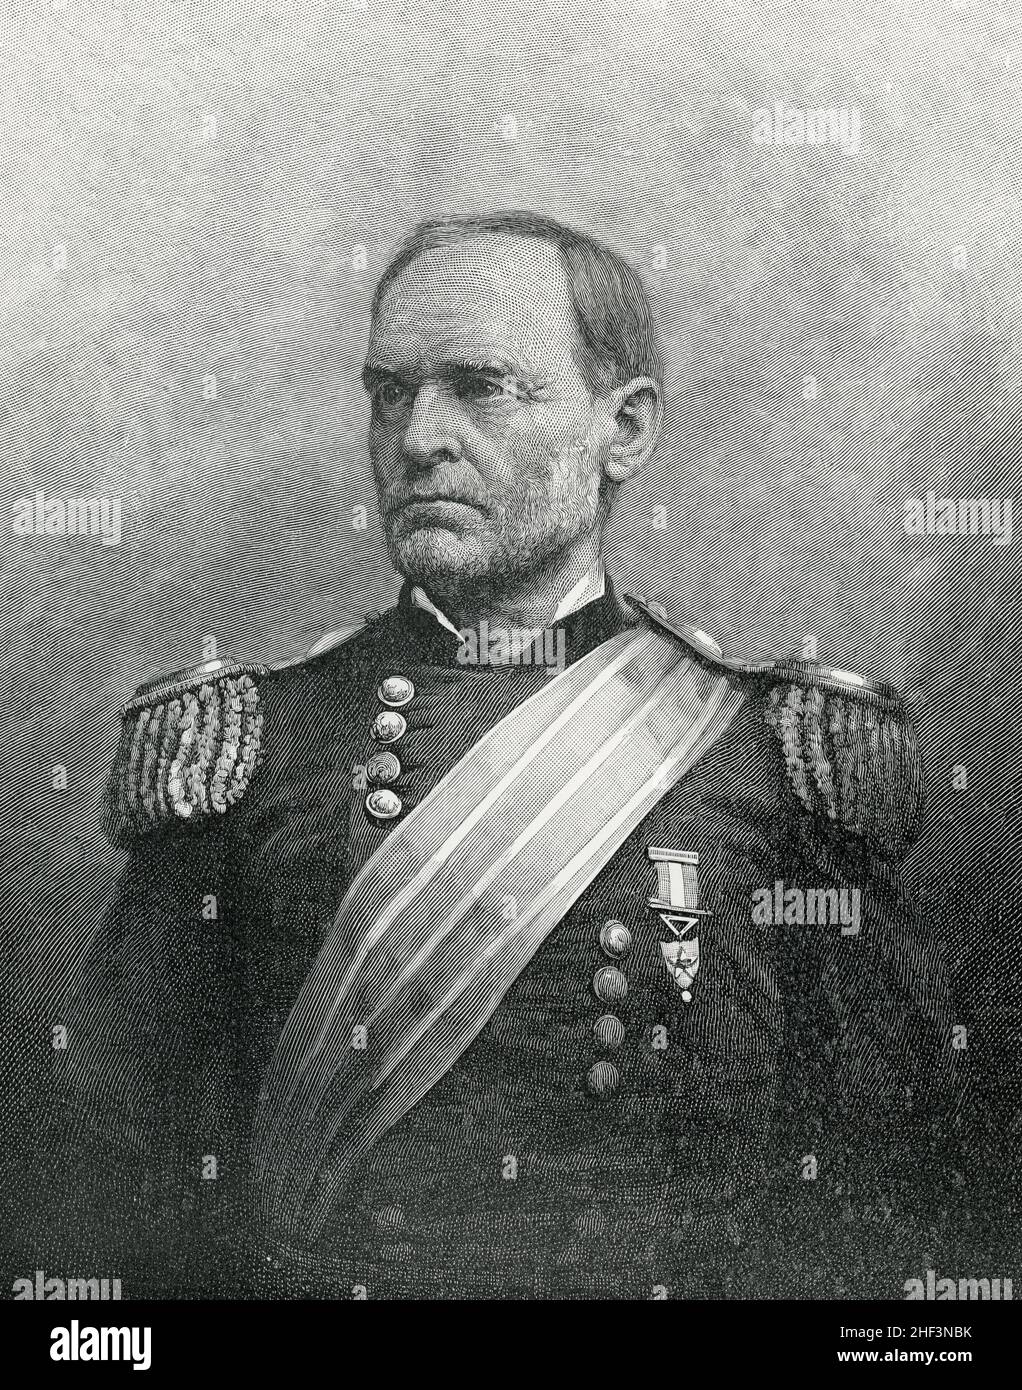 Le général William T Sherman pendant la guerre de Sécession Banque D'Images